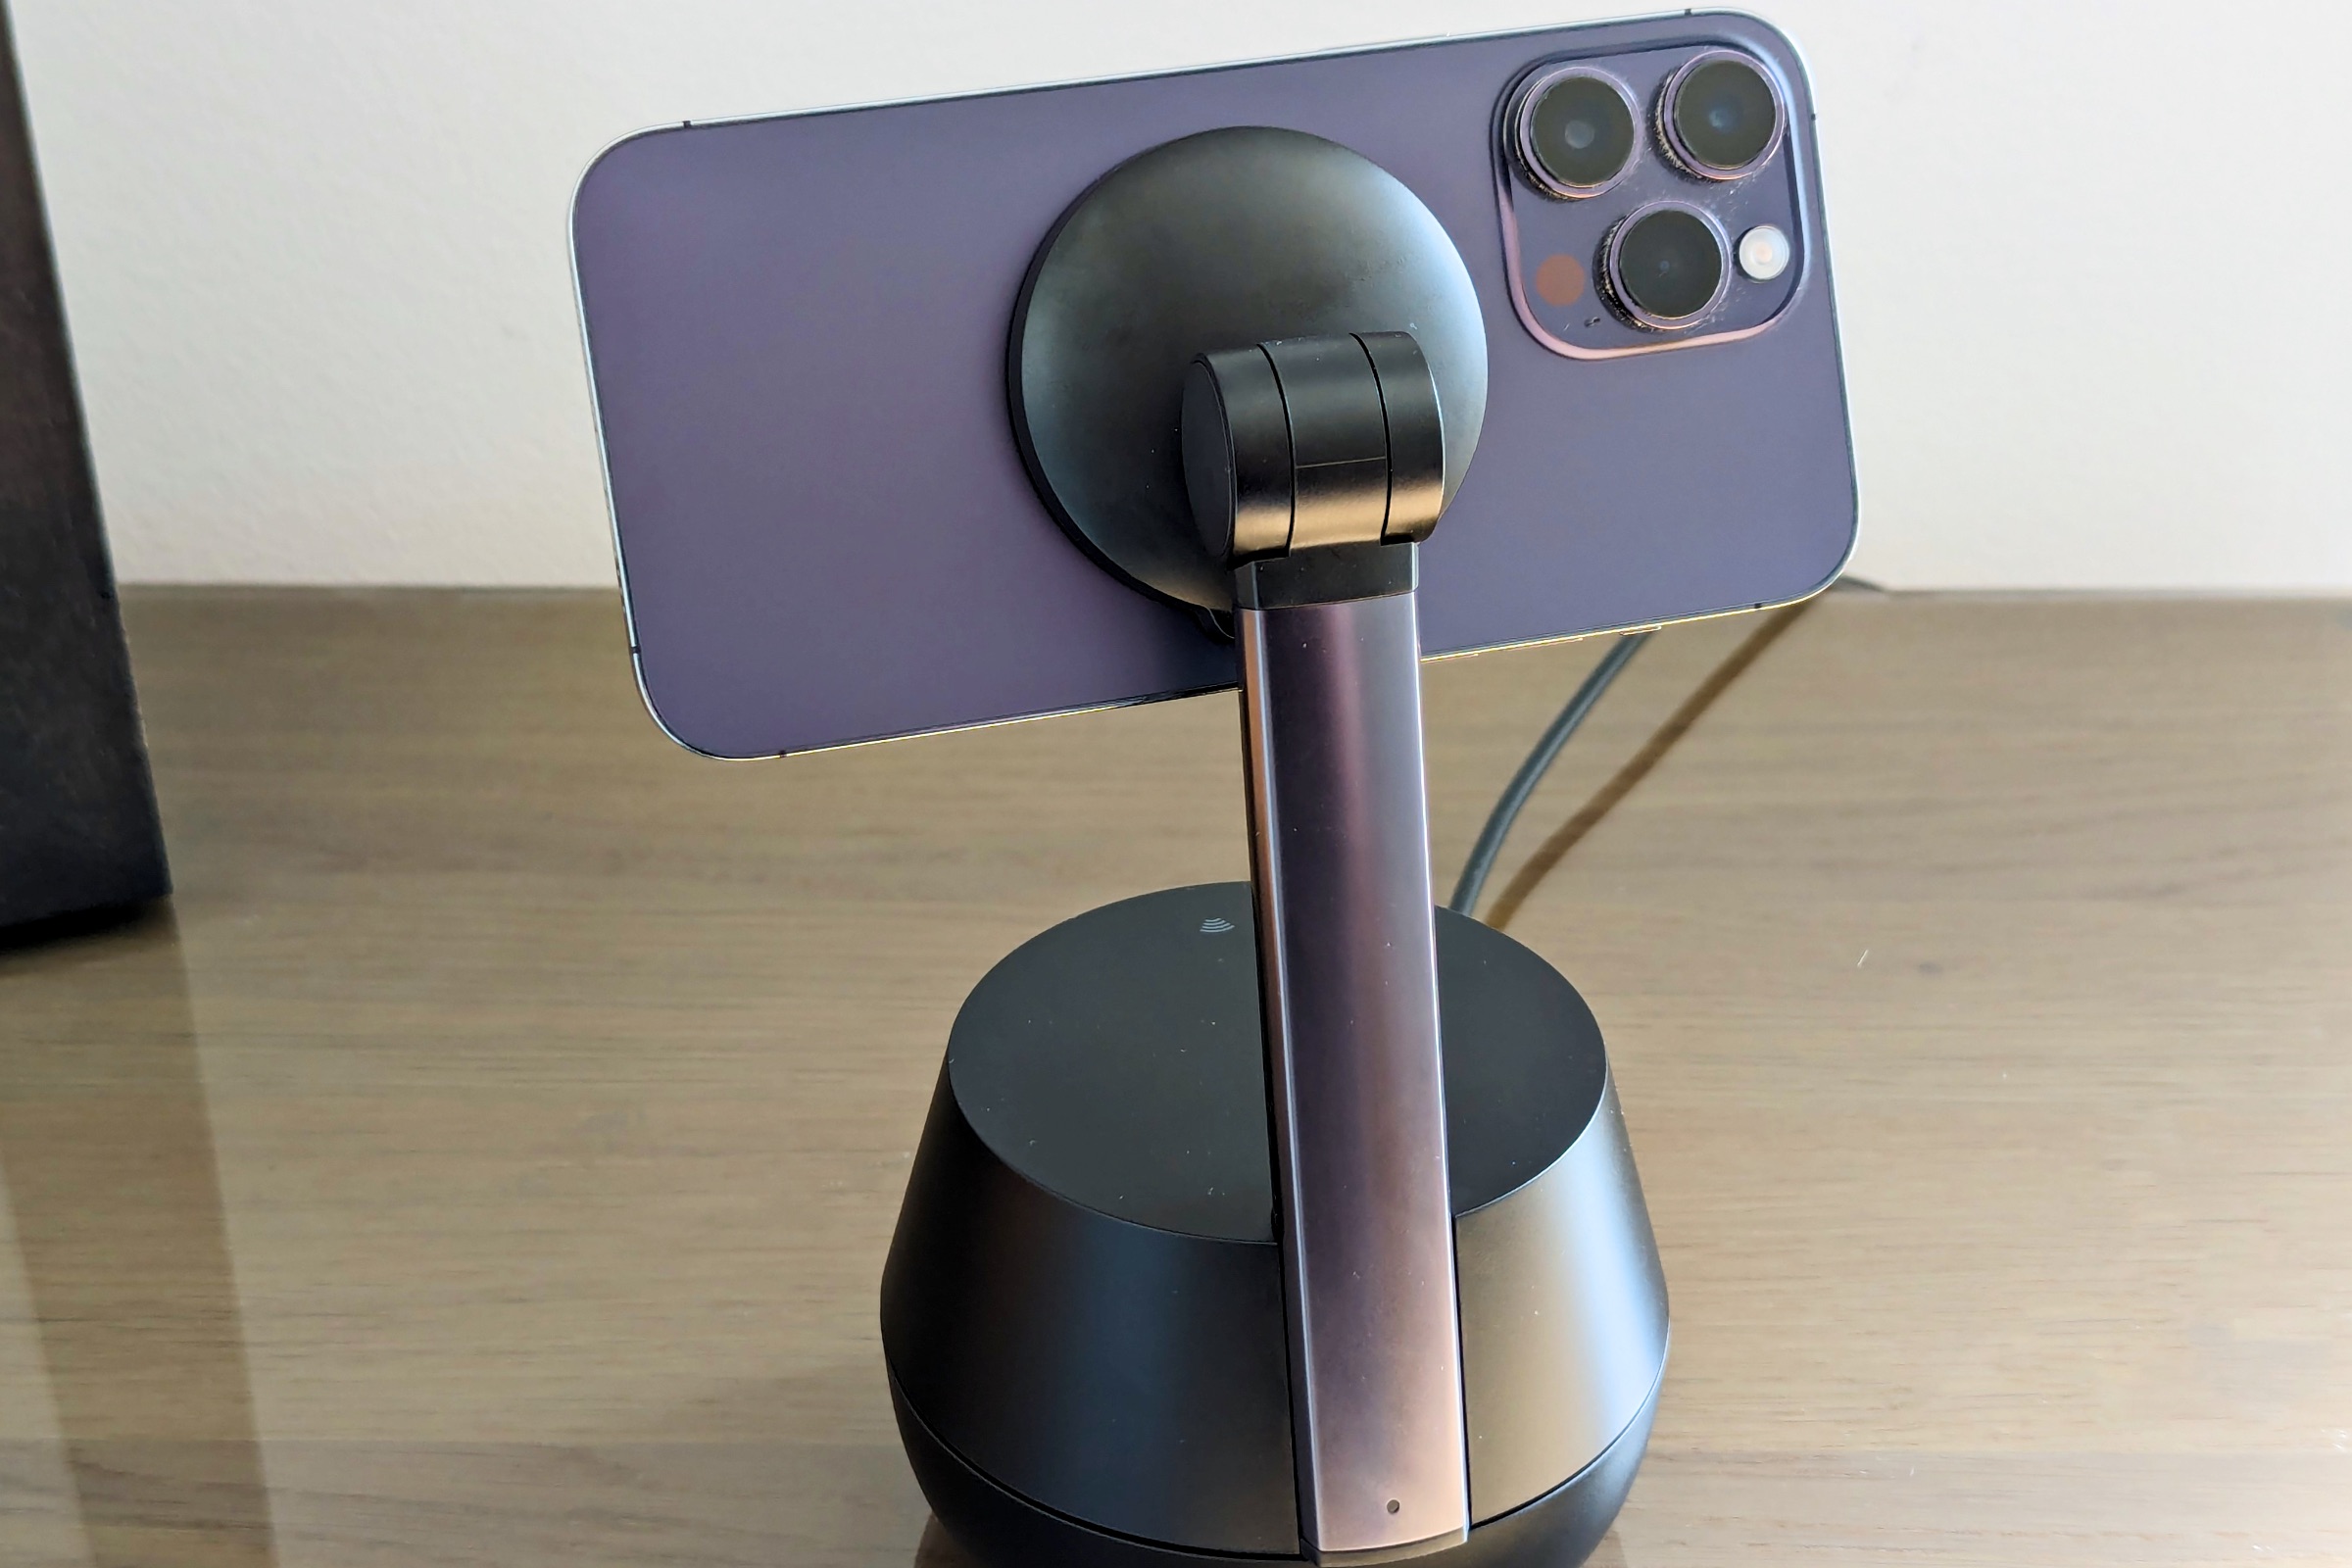 Belkin Stand Pro con iPhone 14 Pro Max montado y la cámara trasera visible.